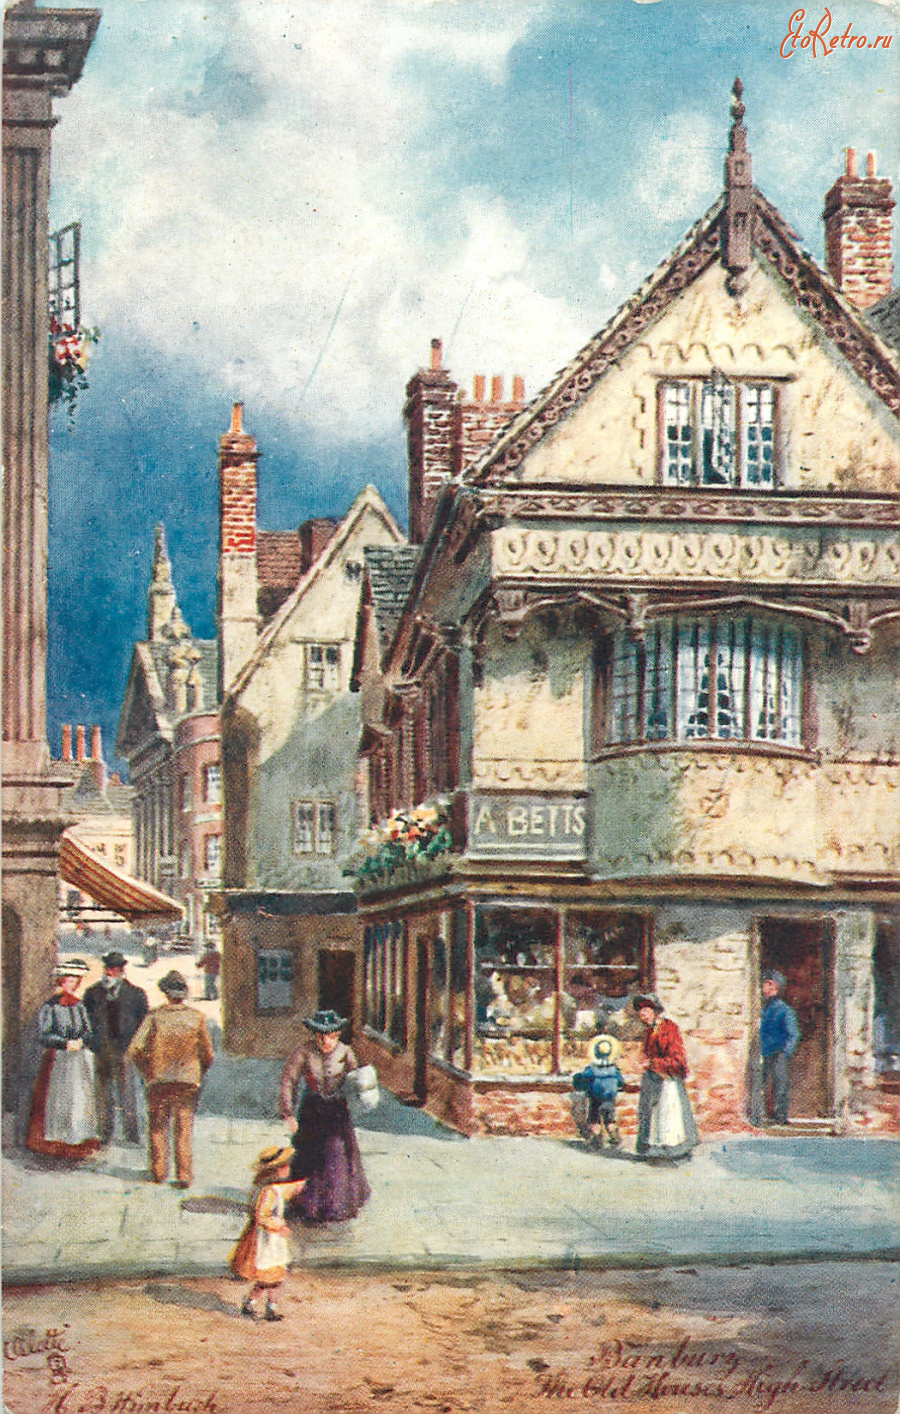 Старые магазины, рестораны и другие учреждения - Старый магазин Беттса на Хай-стрит в Банбери, Оксфордшир